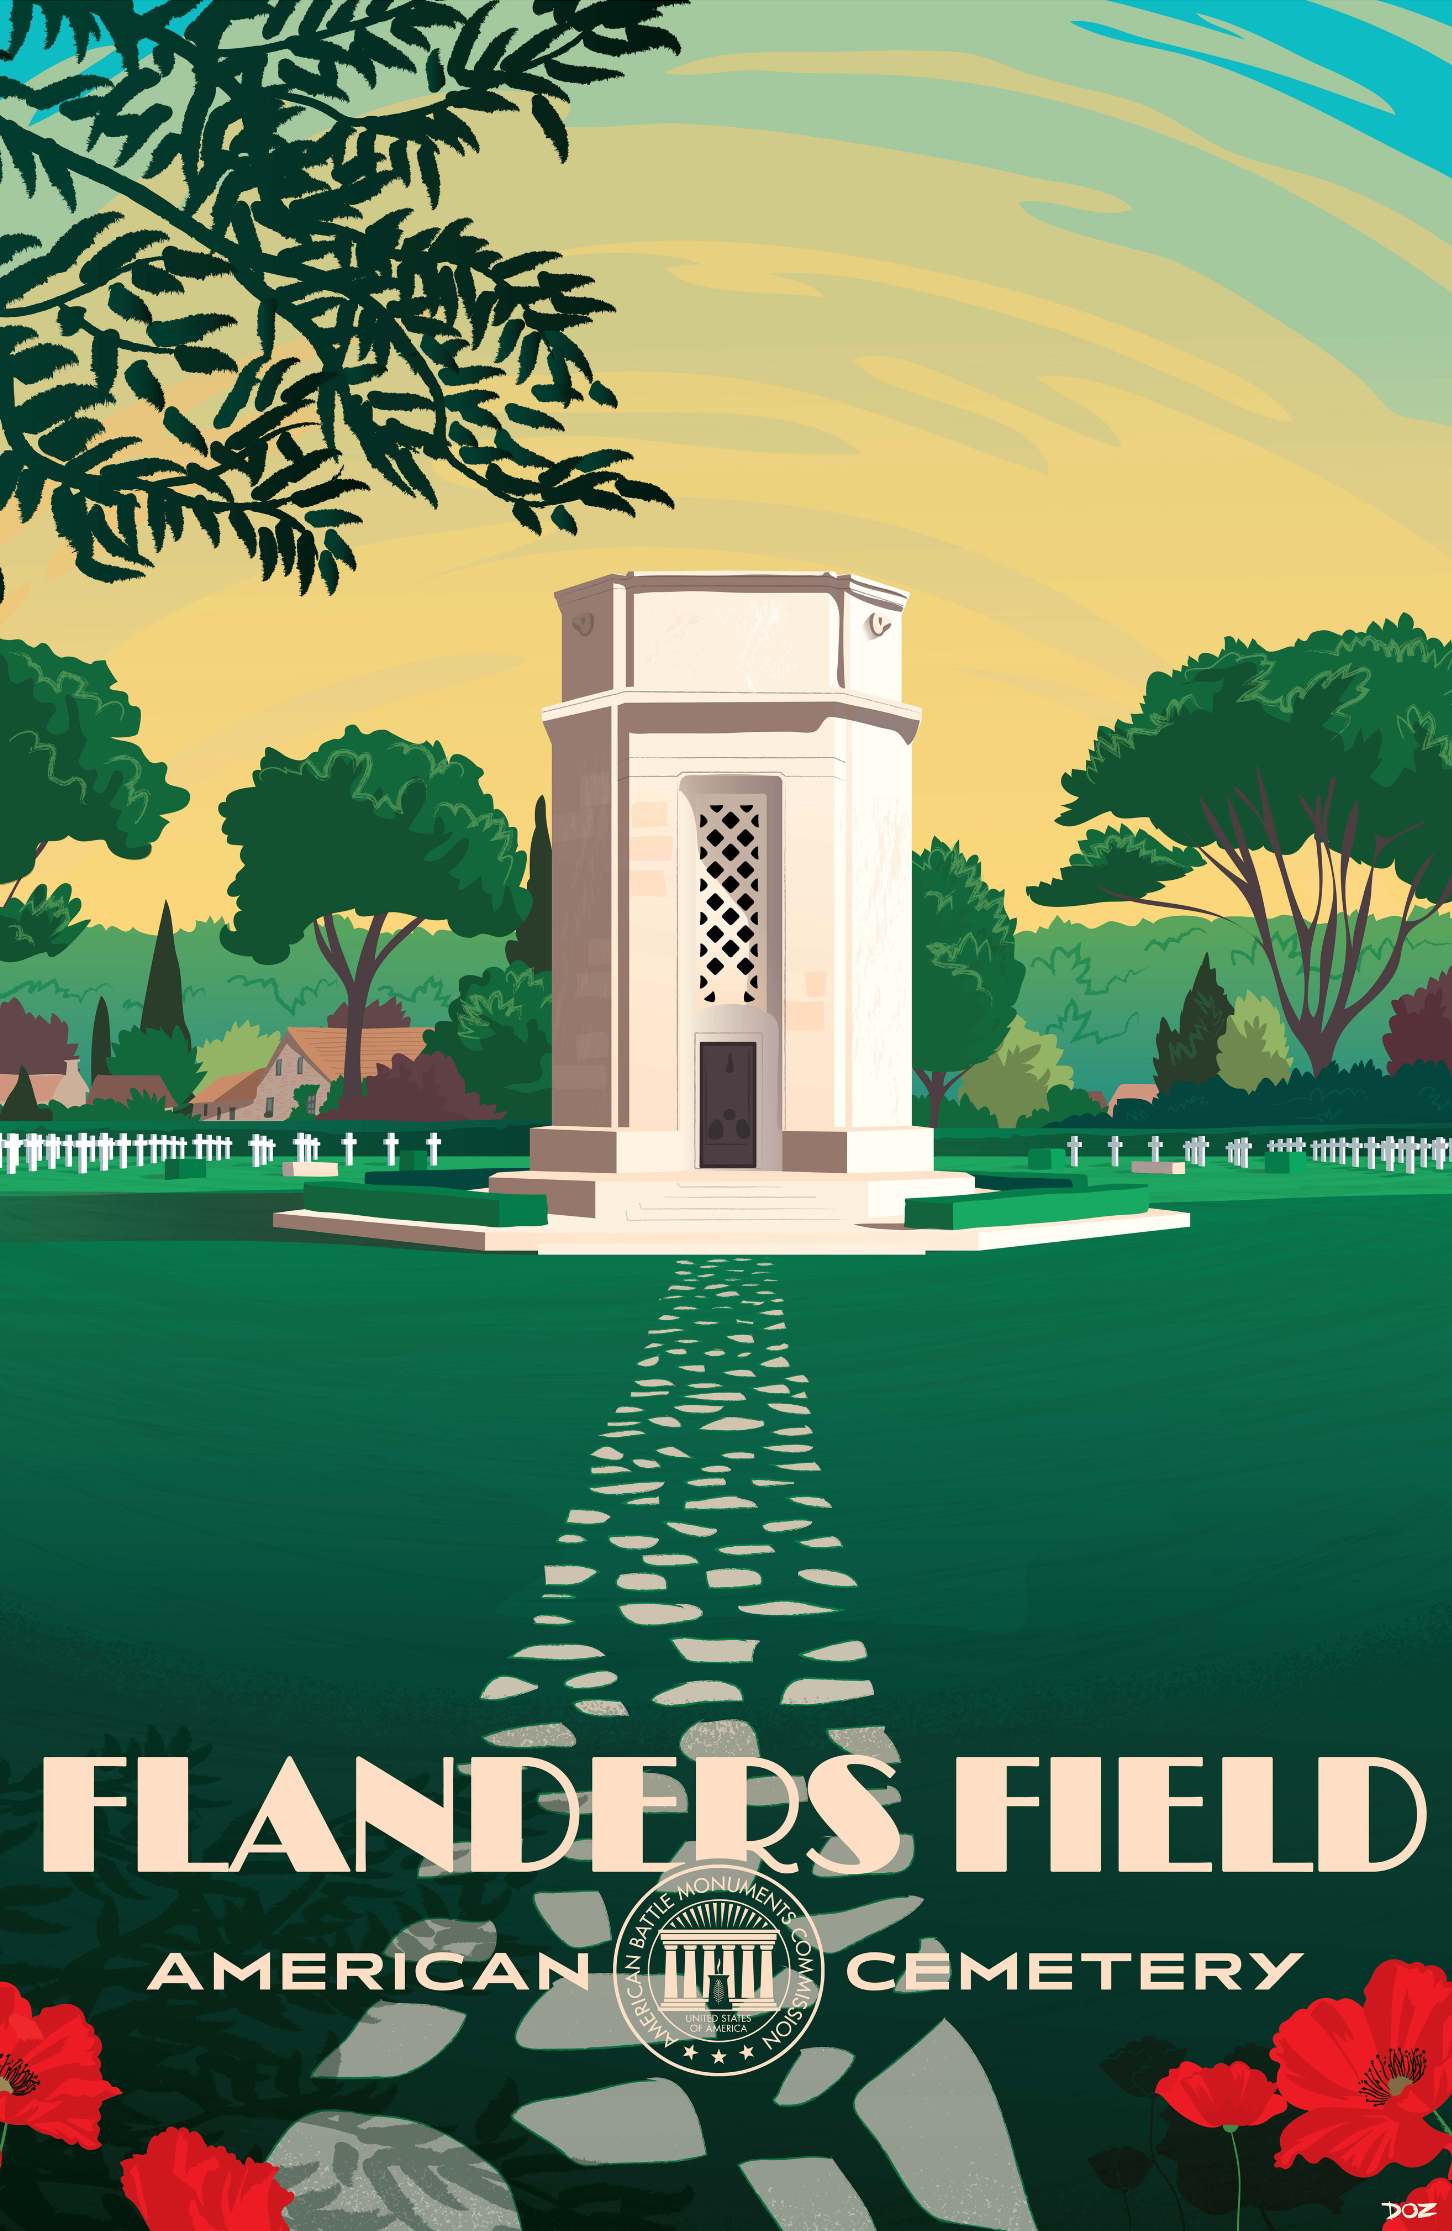 Vintage poster of Flanders Field American Cemetery